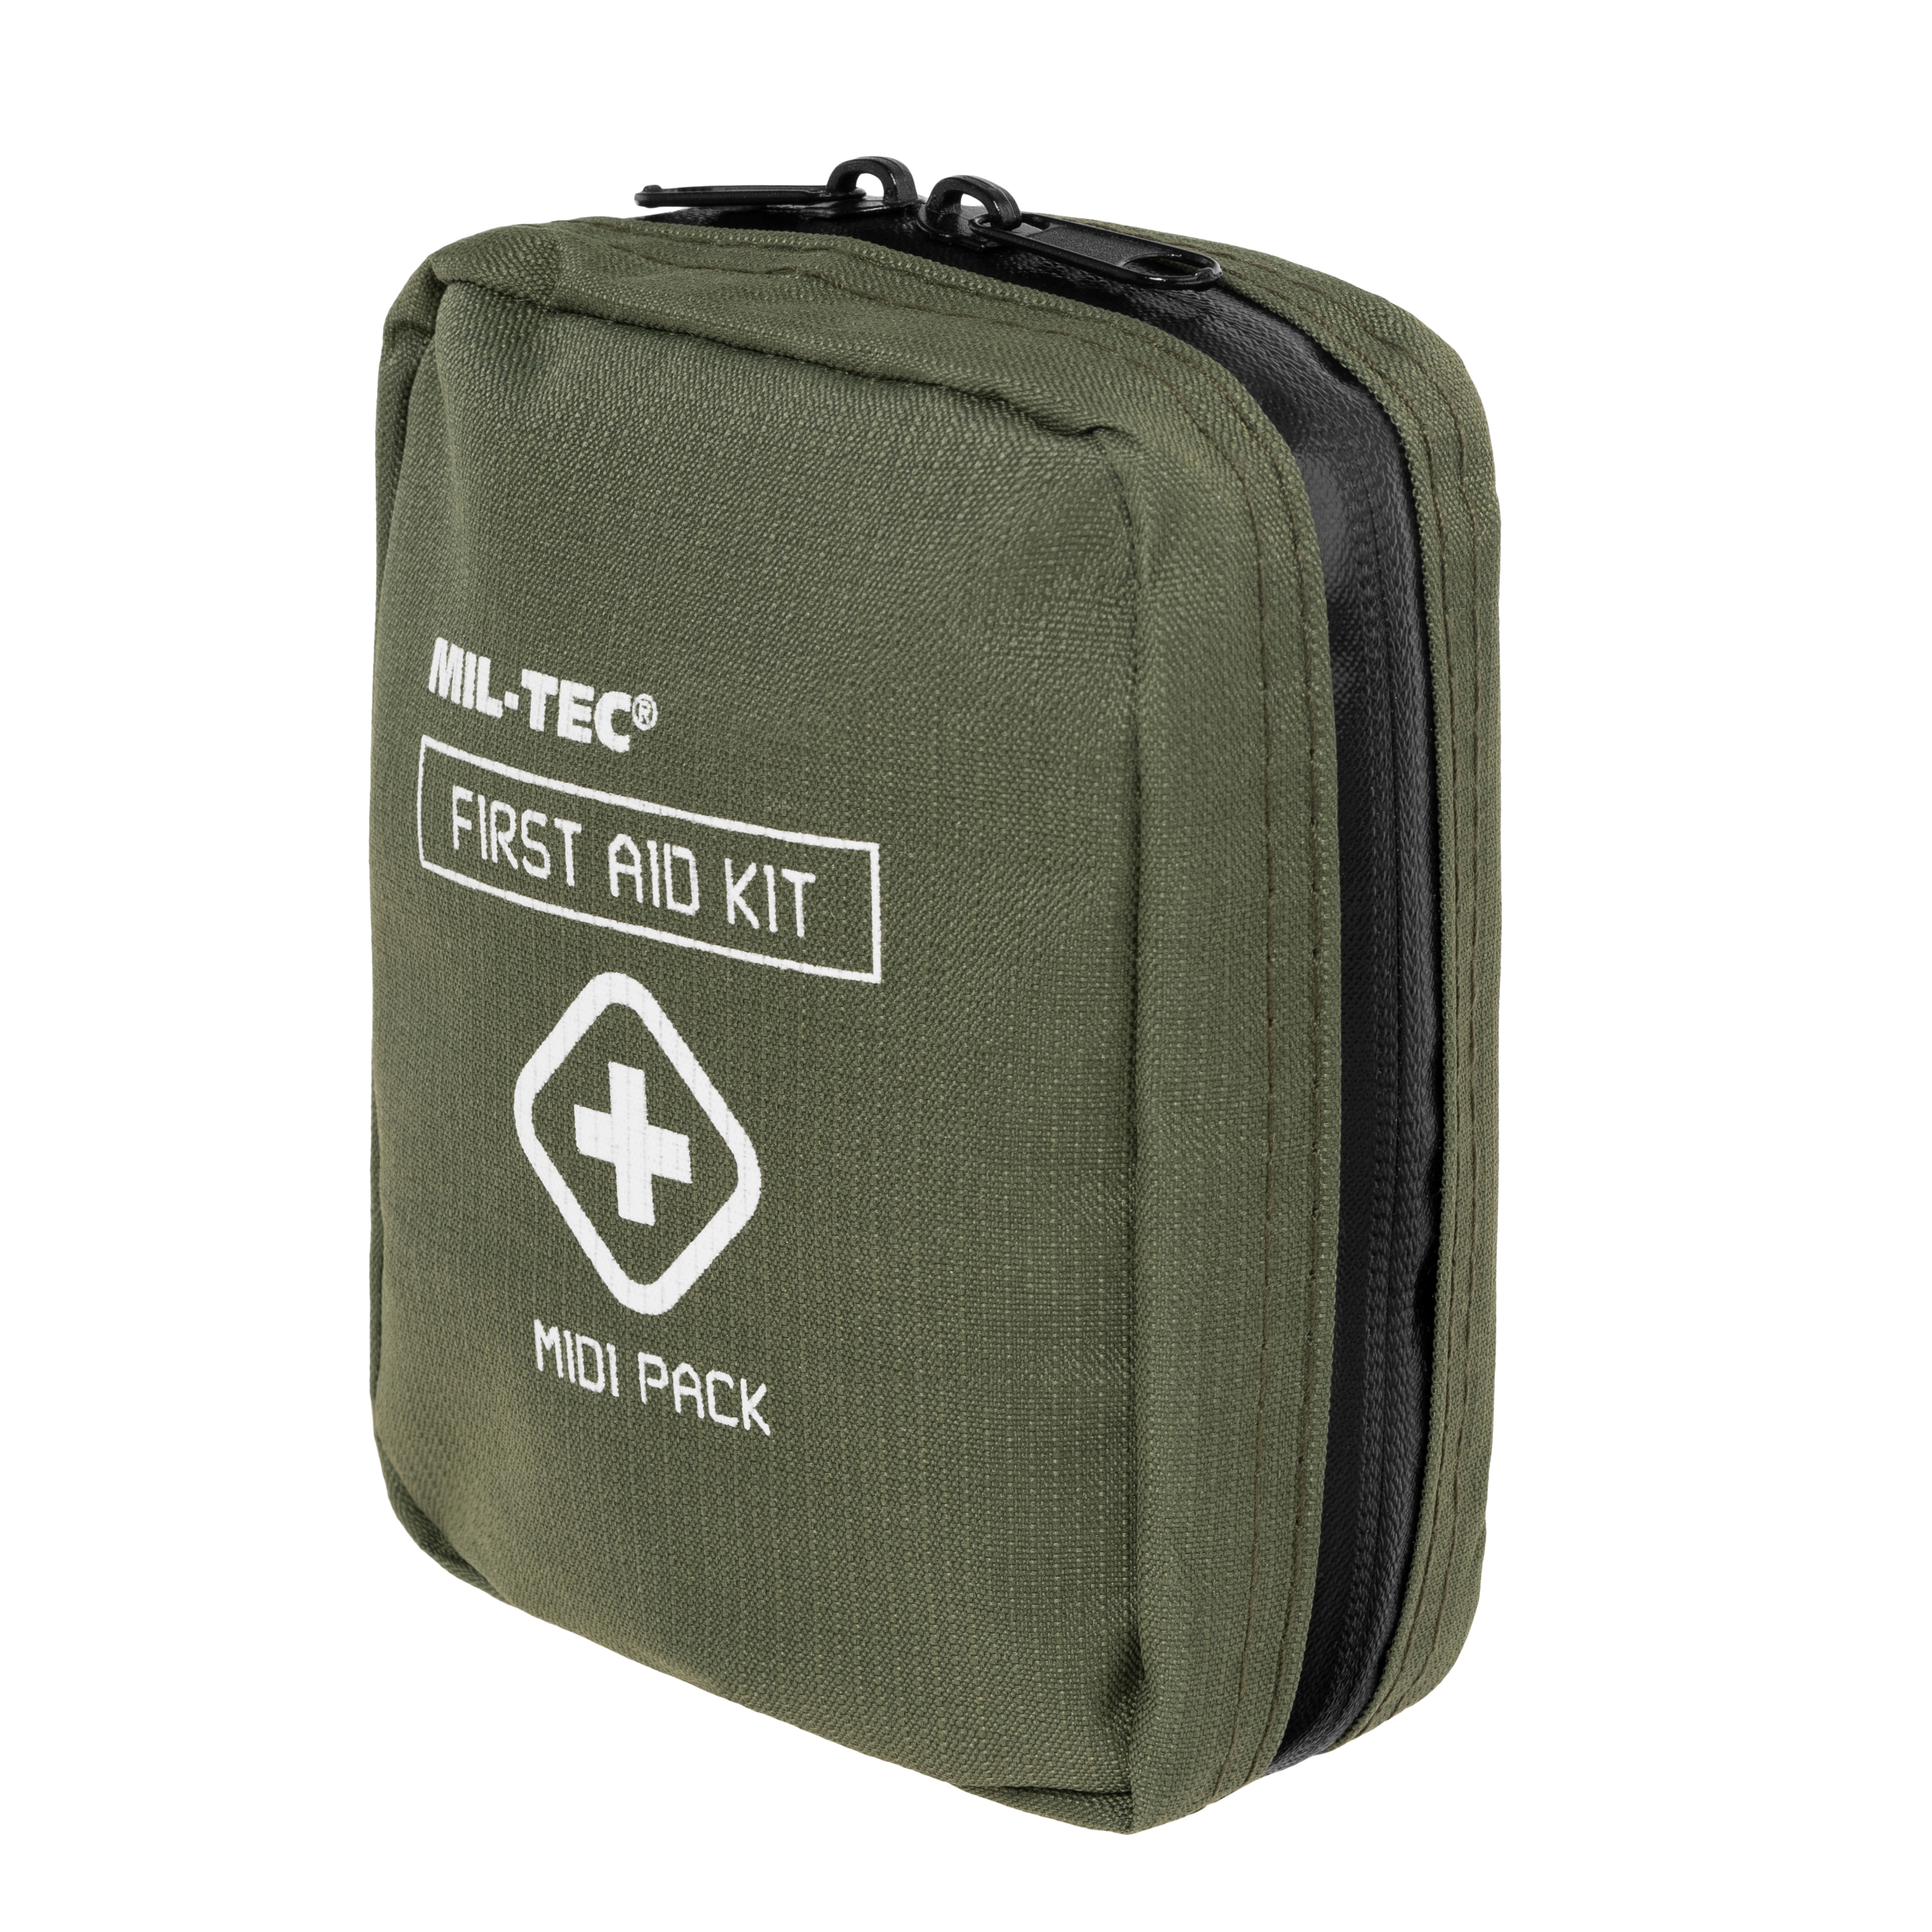 Apteczka Mil-Tec First Aid Kit Midi Pack - Olive